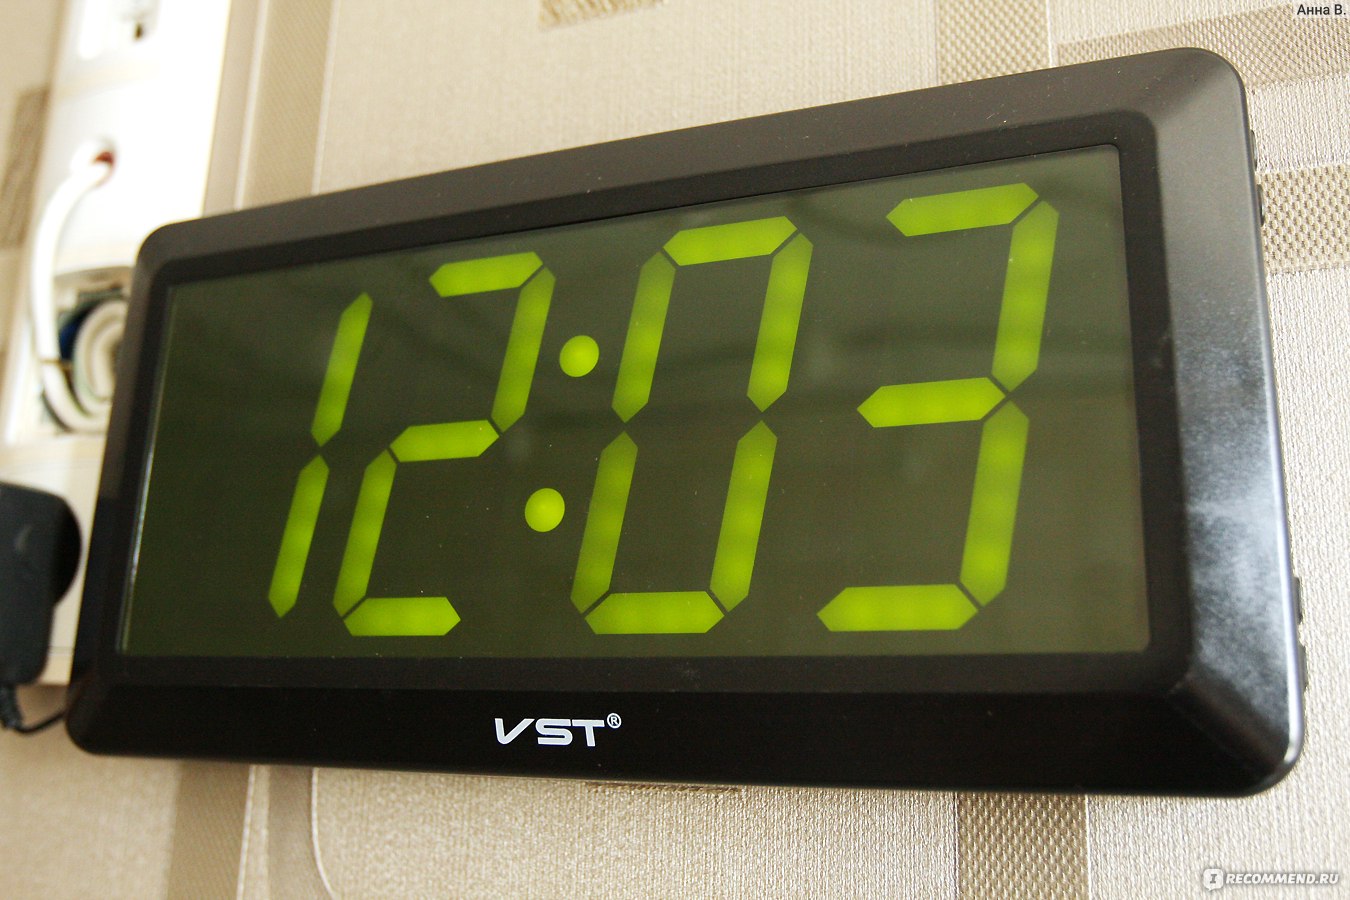 Часы настольные электронные зеленые. Часы VST 780. Настенные часы VST 780. Часы VST настенные 780s. VST-780) зеленая подсветка.